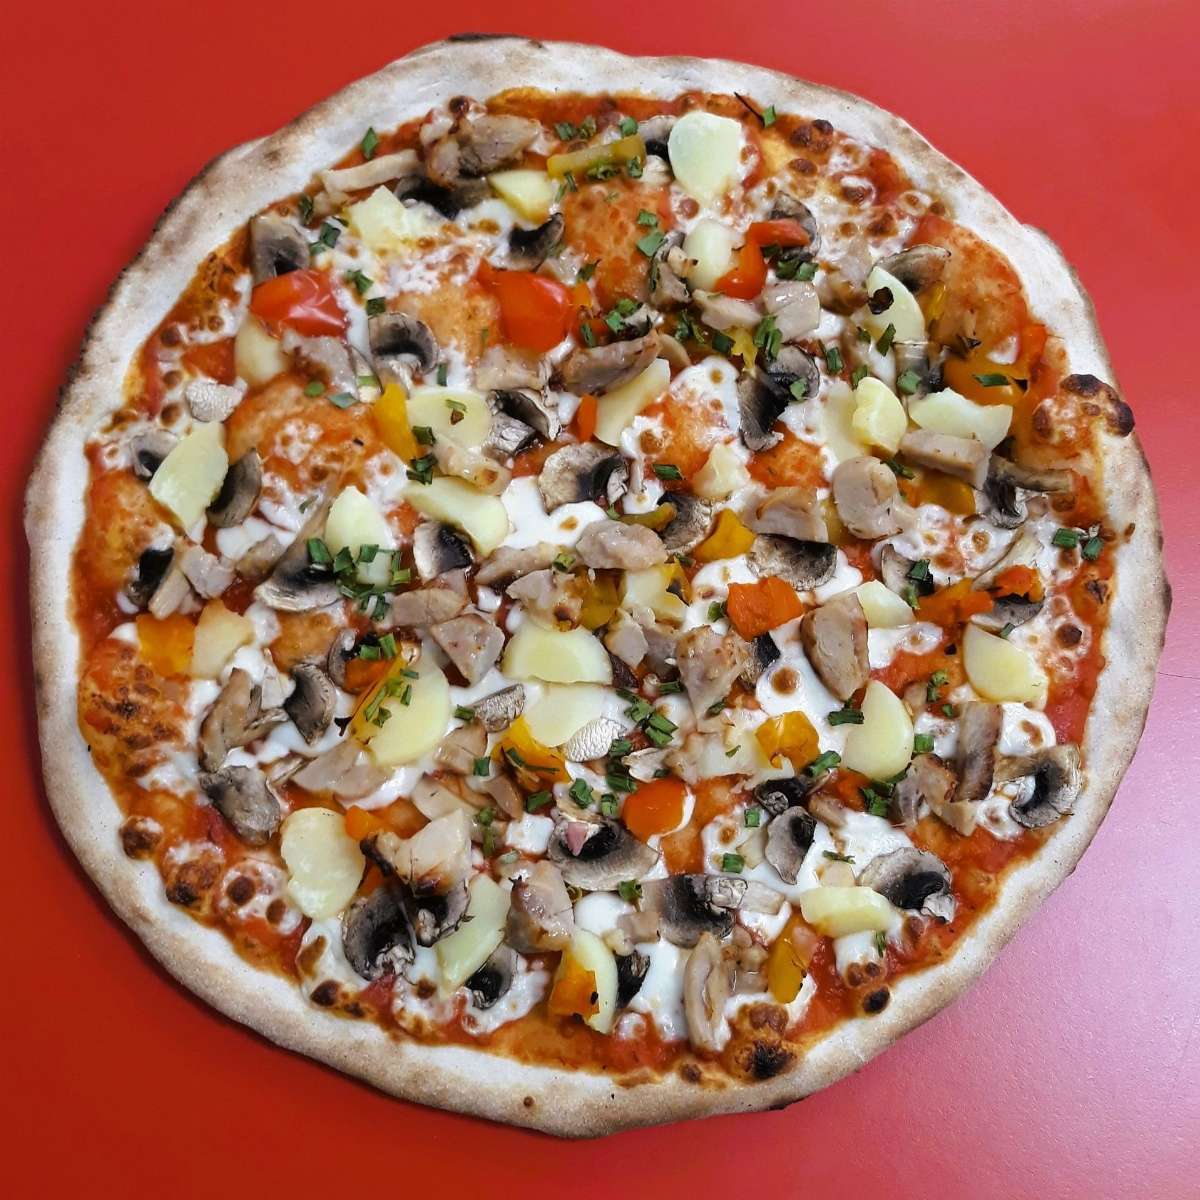 Pizza Fermière